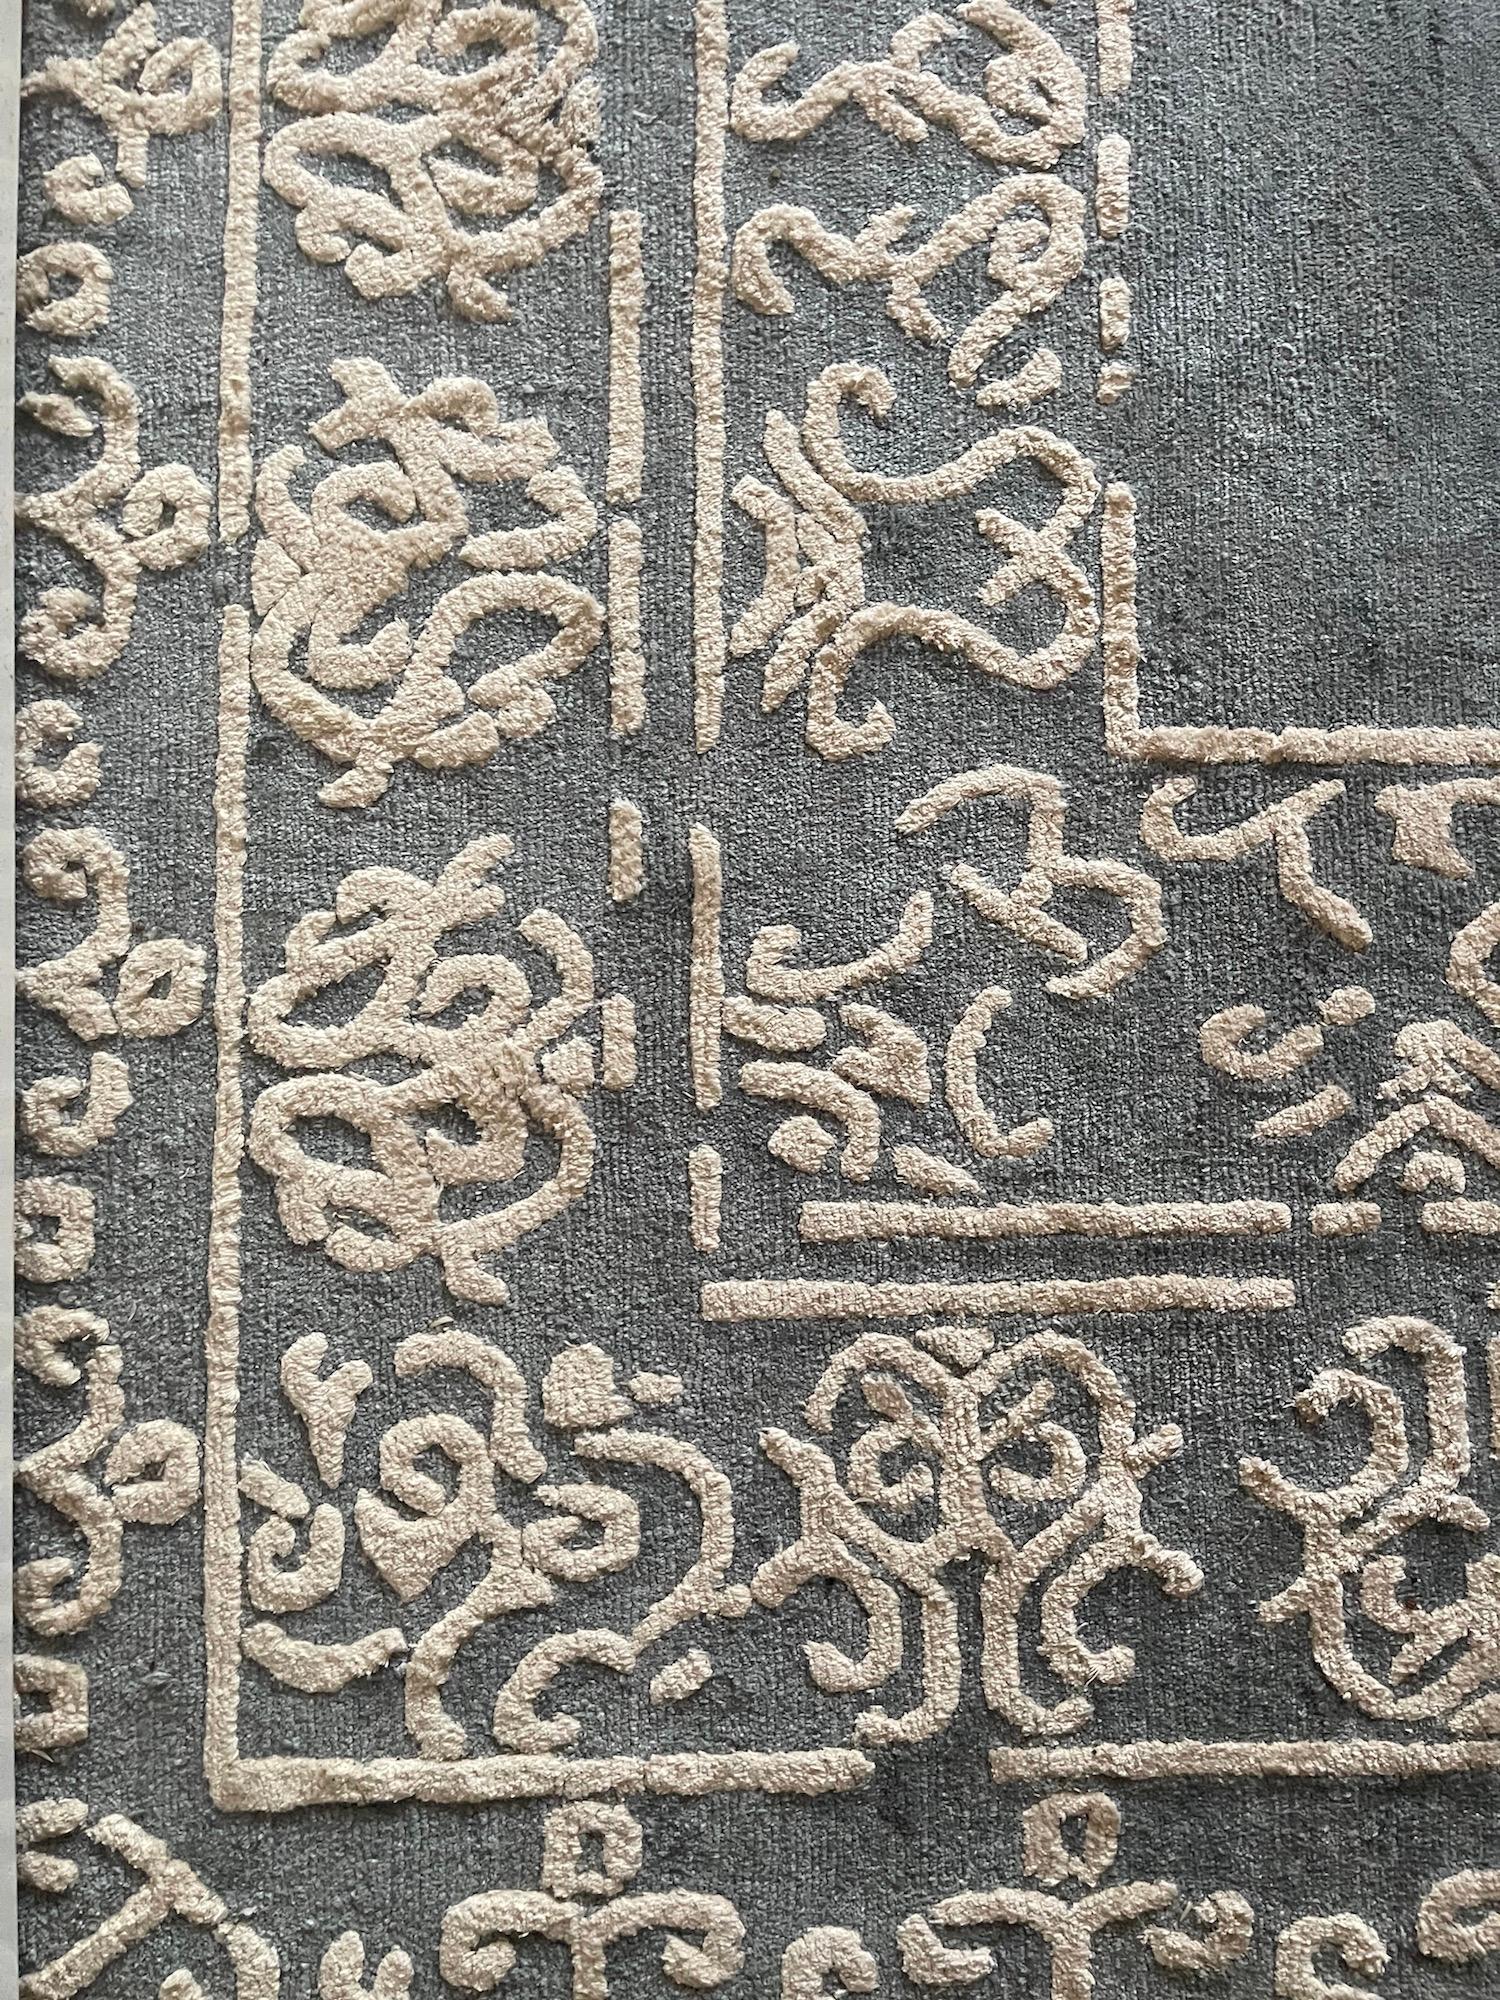 Nepal ist bekannt für seine hochwertigen handgeknüpften Produkte. Dieser Teppich ist aus hochwertiger Wolle, bester Seide und Nessel gefertigt. Die Verwendung hochwertiger MATERIALIEN und traditioneller Knüpftechniken tragen zur Haltbarkeit und